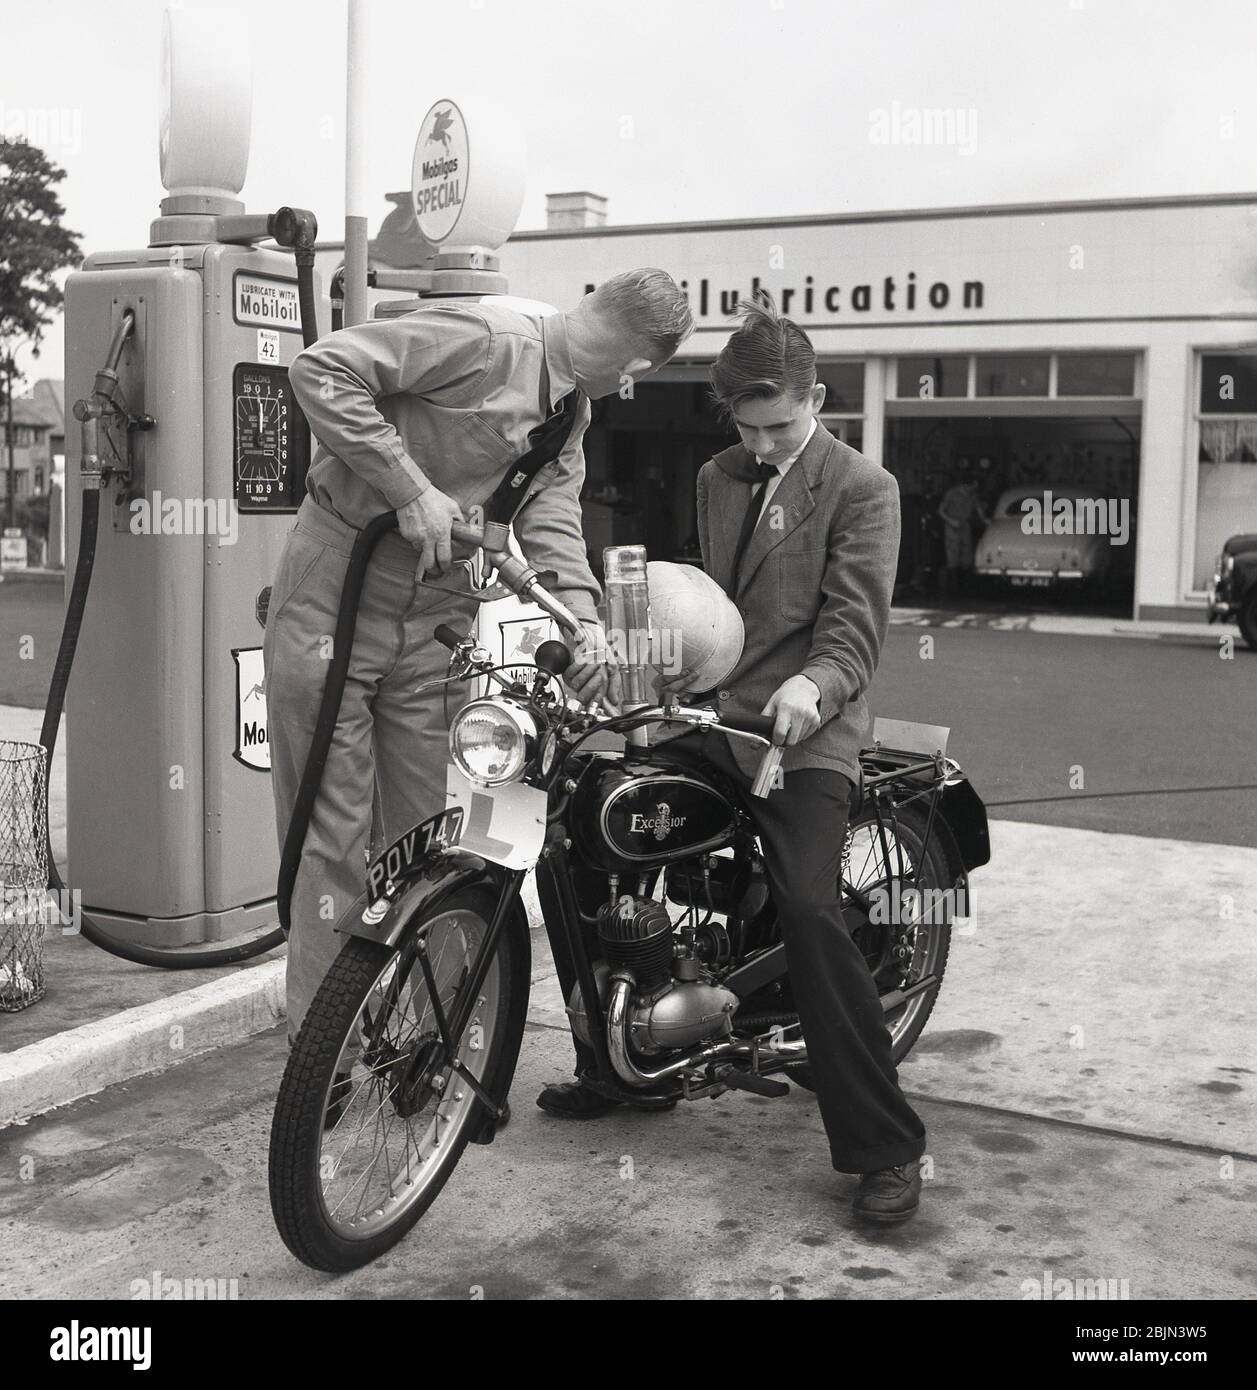 1950s, historisch, ein junger Mann, der auf einem britischen Excelsior Motorrad draußen in einer Garage mit Benzin in seinem Tank von einem uniformierten Vorplatz Aufseher, England, Großbritannien. Excelsior mit Sitz in Coventry war Großbritanniens erster Motorradhersteller, der 1896 sein eigenes 'Motorfahrrad' hergestellt hatte. Stockfoto